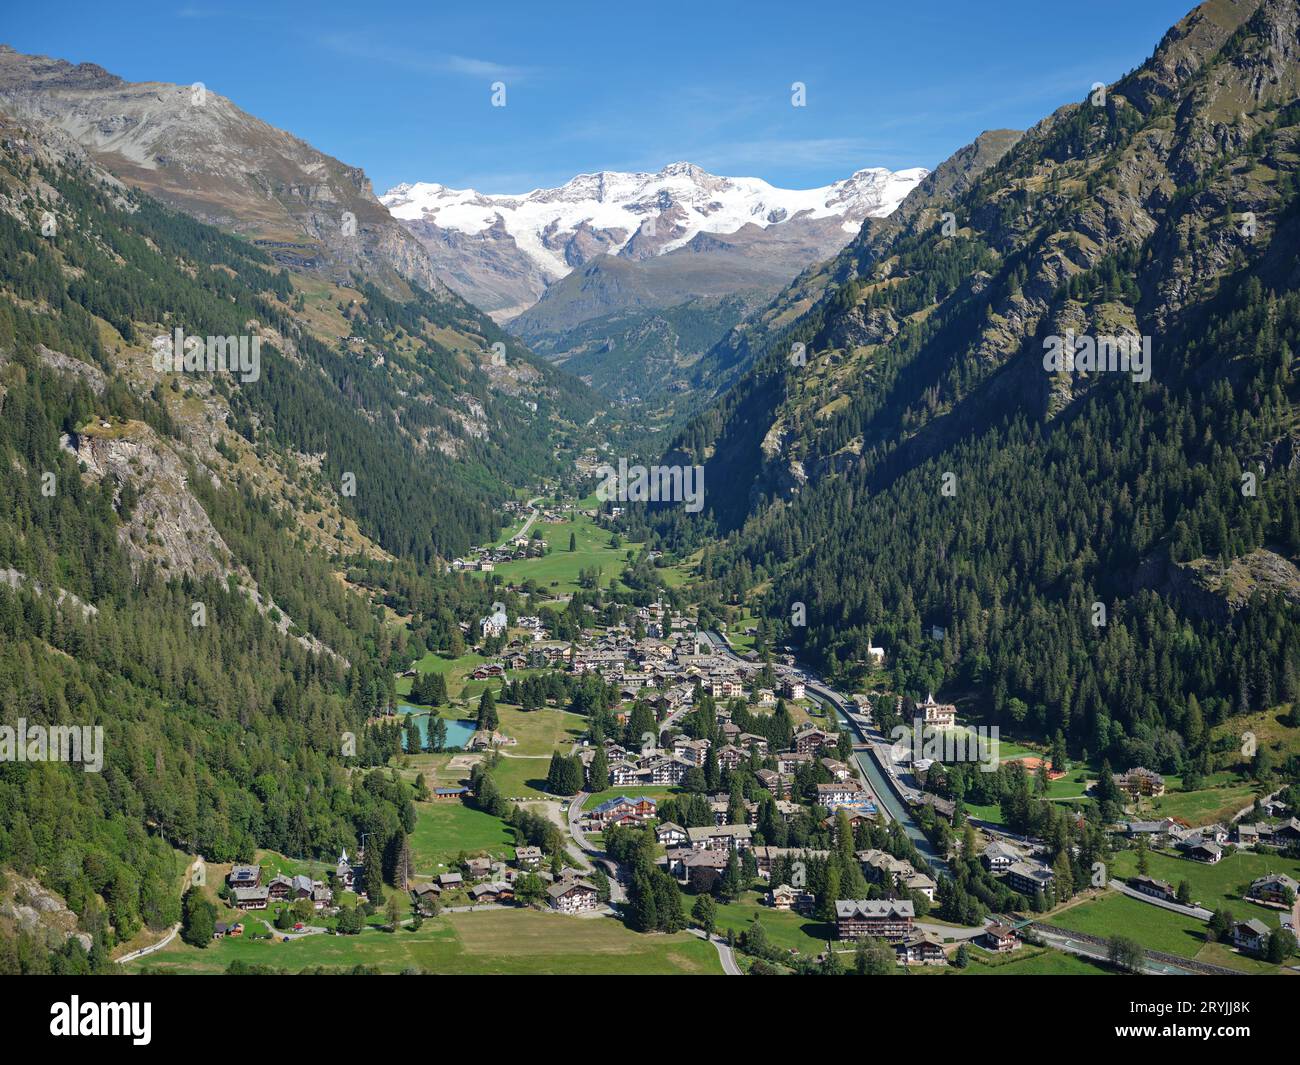 VUE AÉRIENNE. Village de Gressoney-Saint-Jean avec le mont Lyskamm (4533 mètres) au loin. Vallée d'Aoste, Italie. Banque D'Images